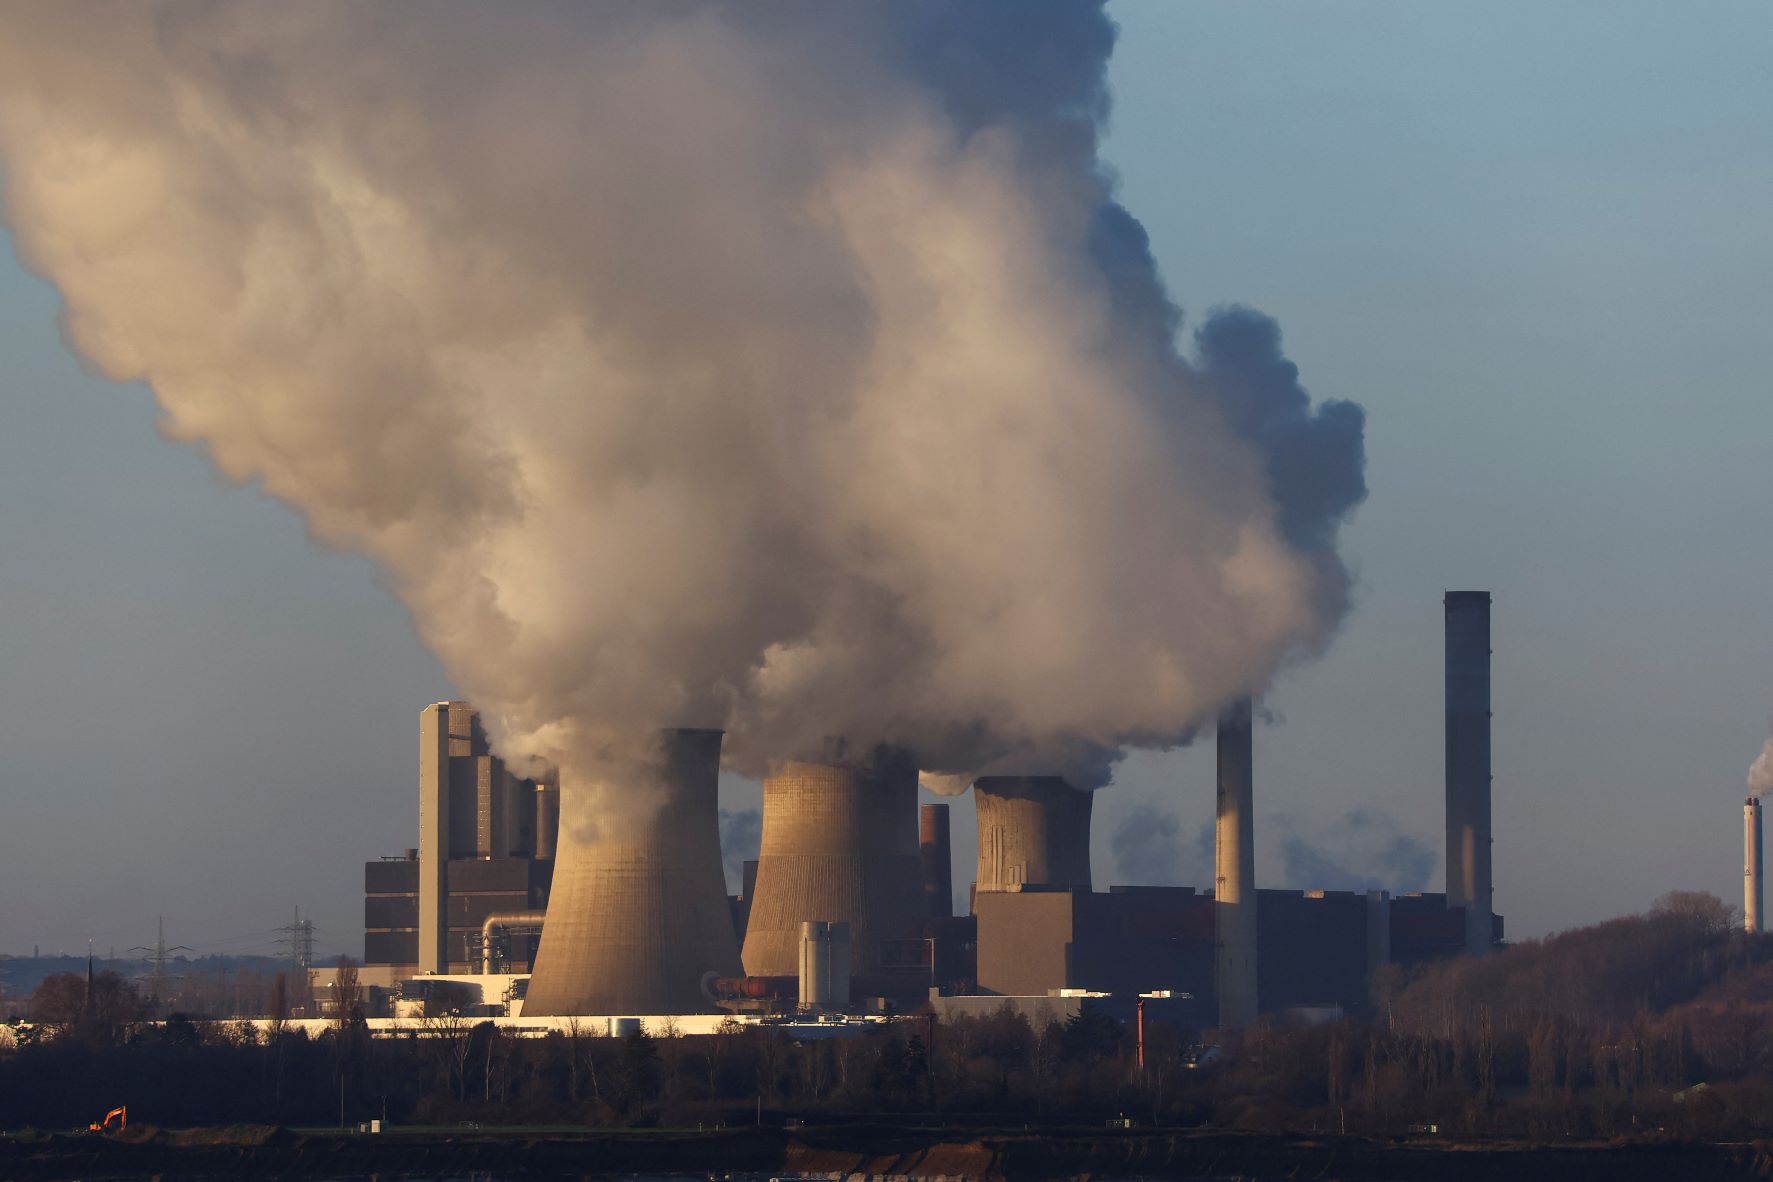 Le projet peu ambitieux de l'Union européenne pour certifier la séquestration de CO2